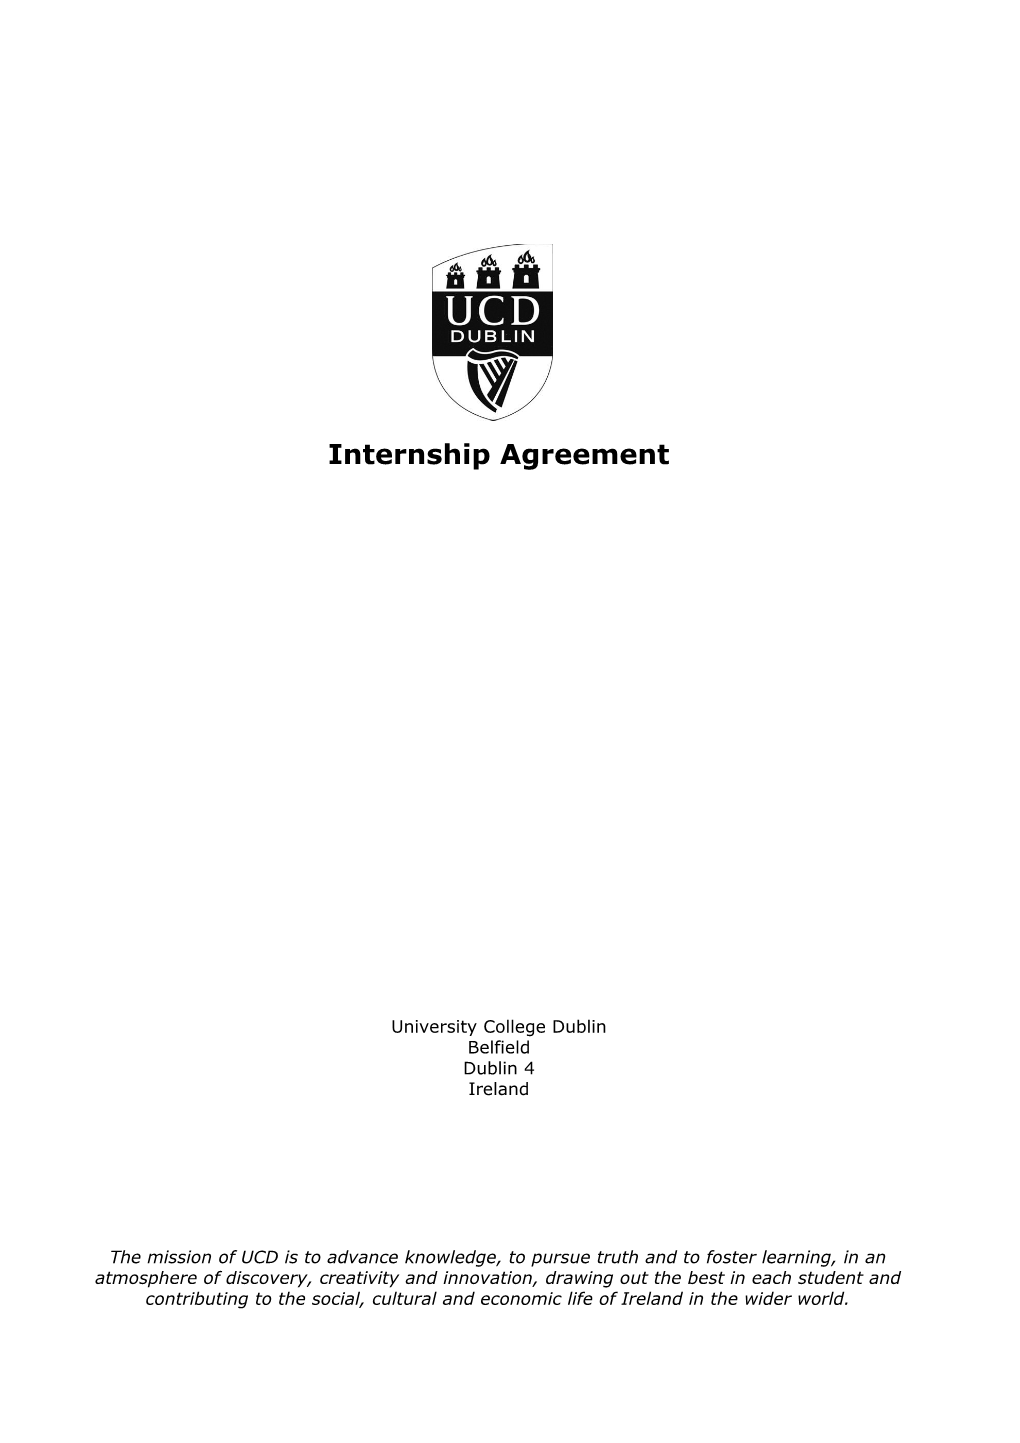 Work Placement Agreement (Ireland)